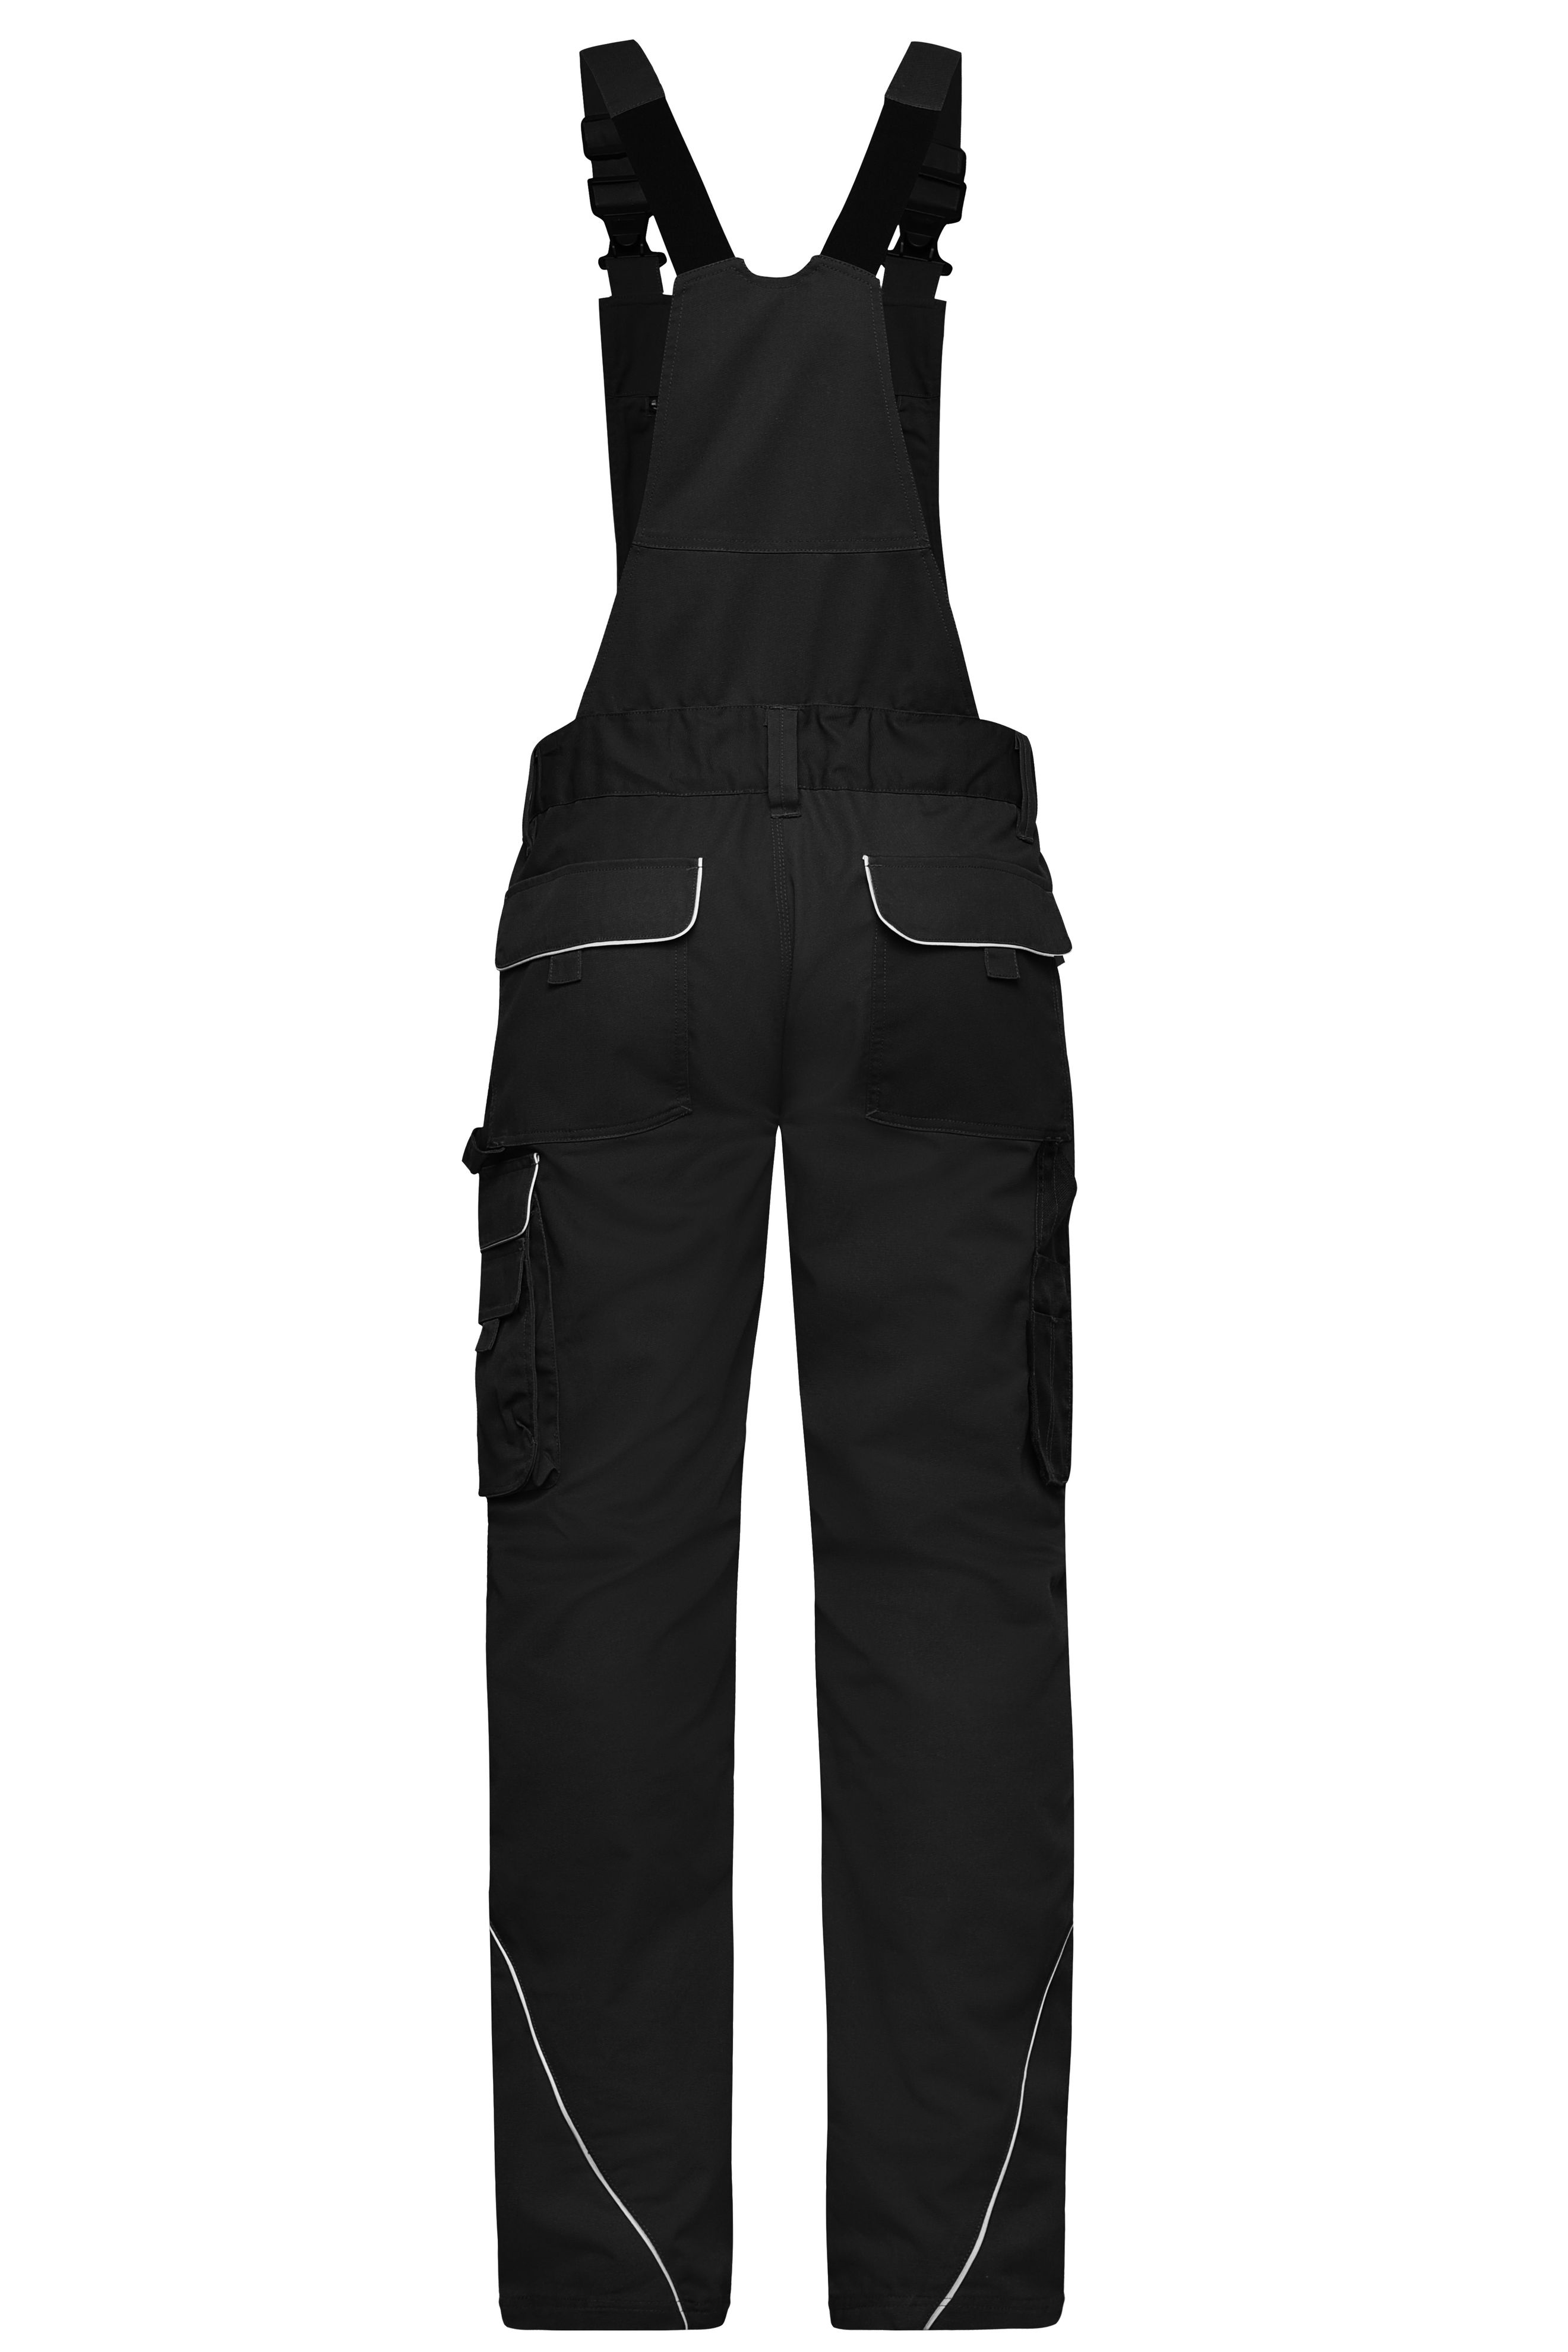 Workwear Pants with Bib - SOLID - JN879 Funktionelle Latzhose im cleanen Look mit hochwertigen Details